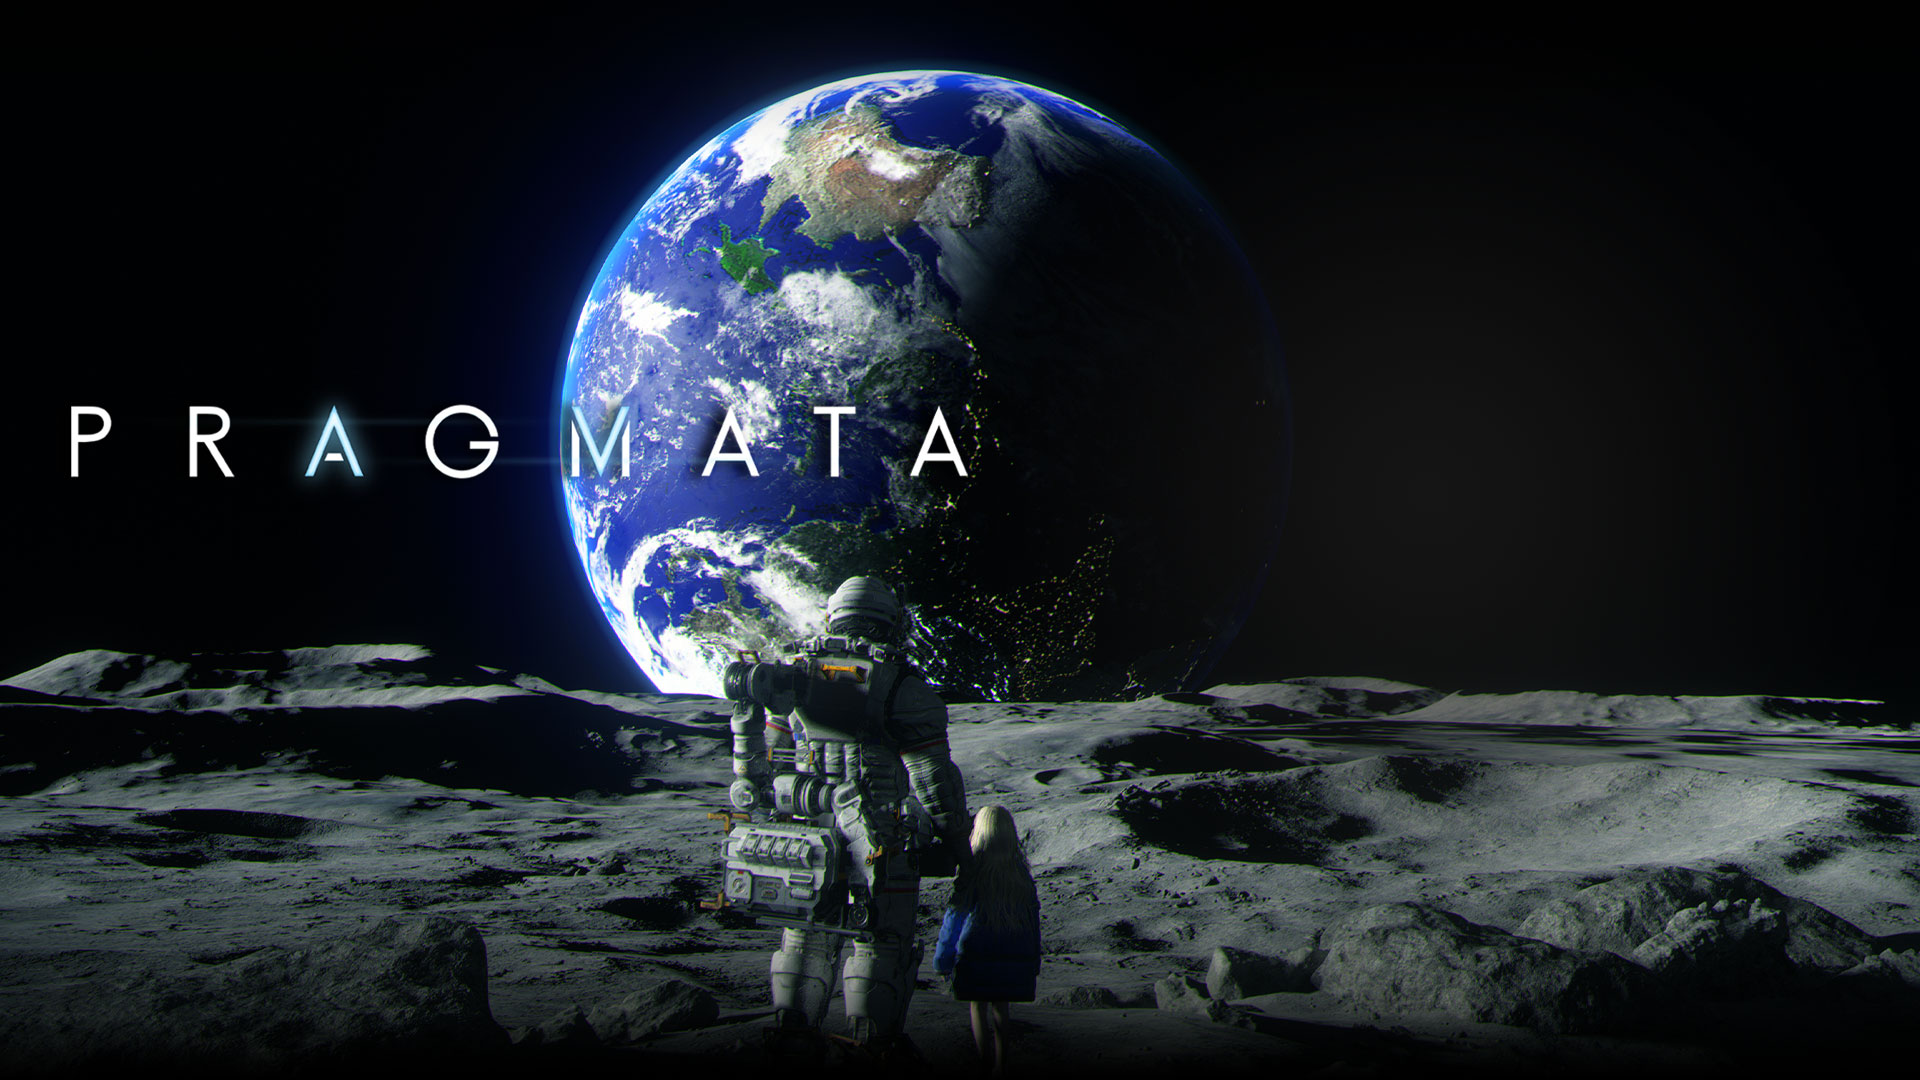 Pragmata, en astronaut och en ung flicka står tillsammans på månen och tittar på jorden